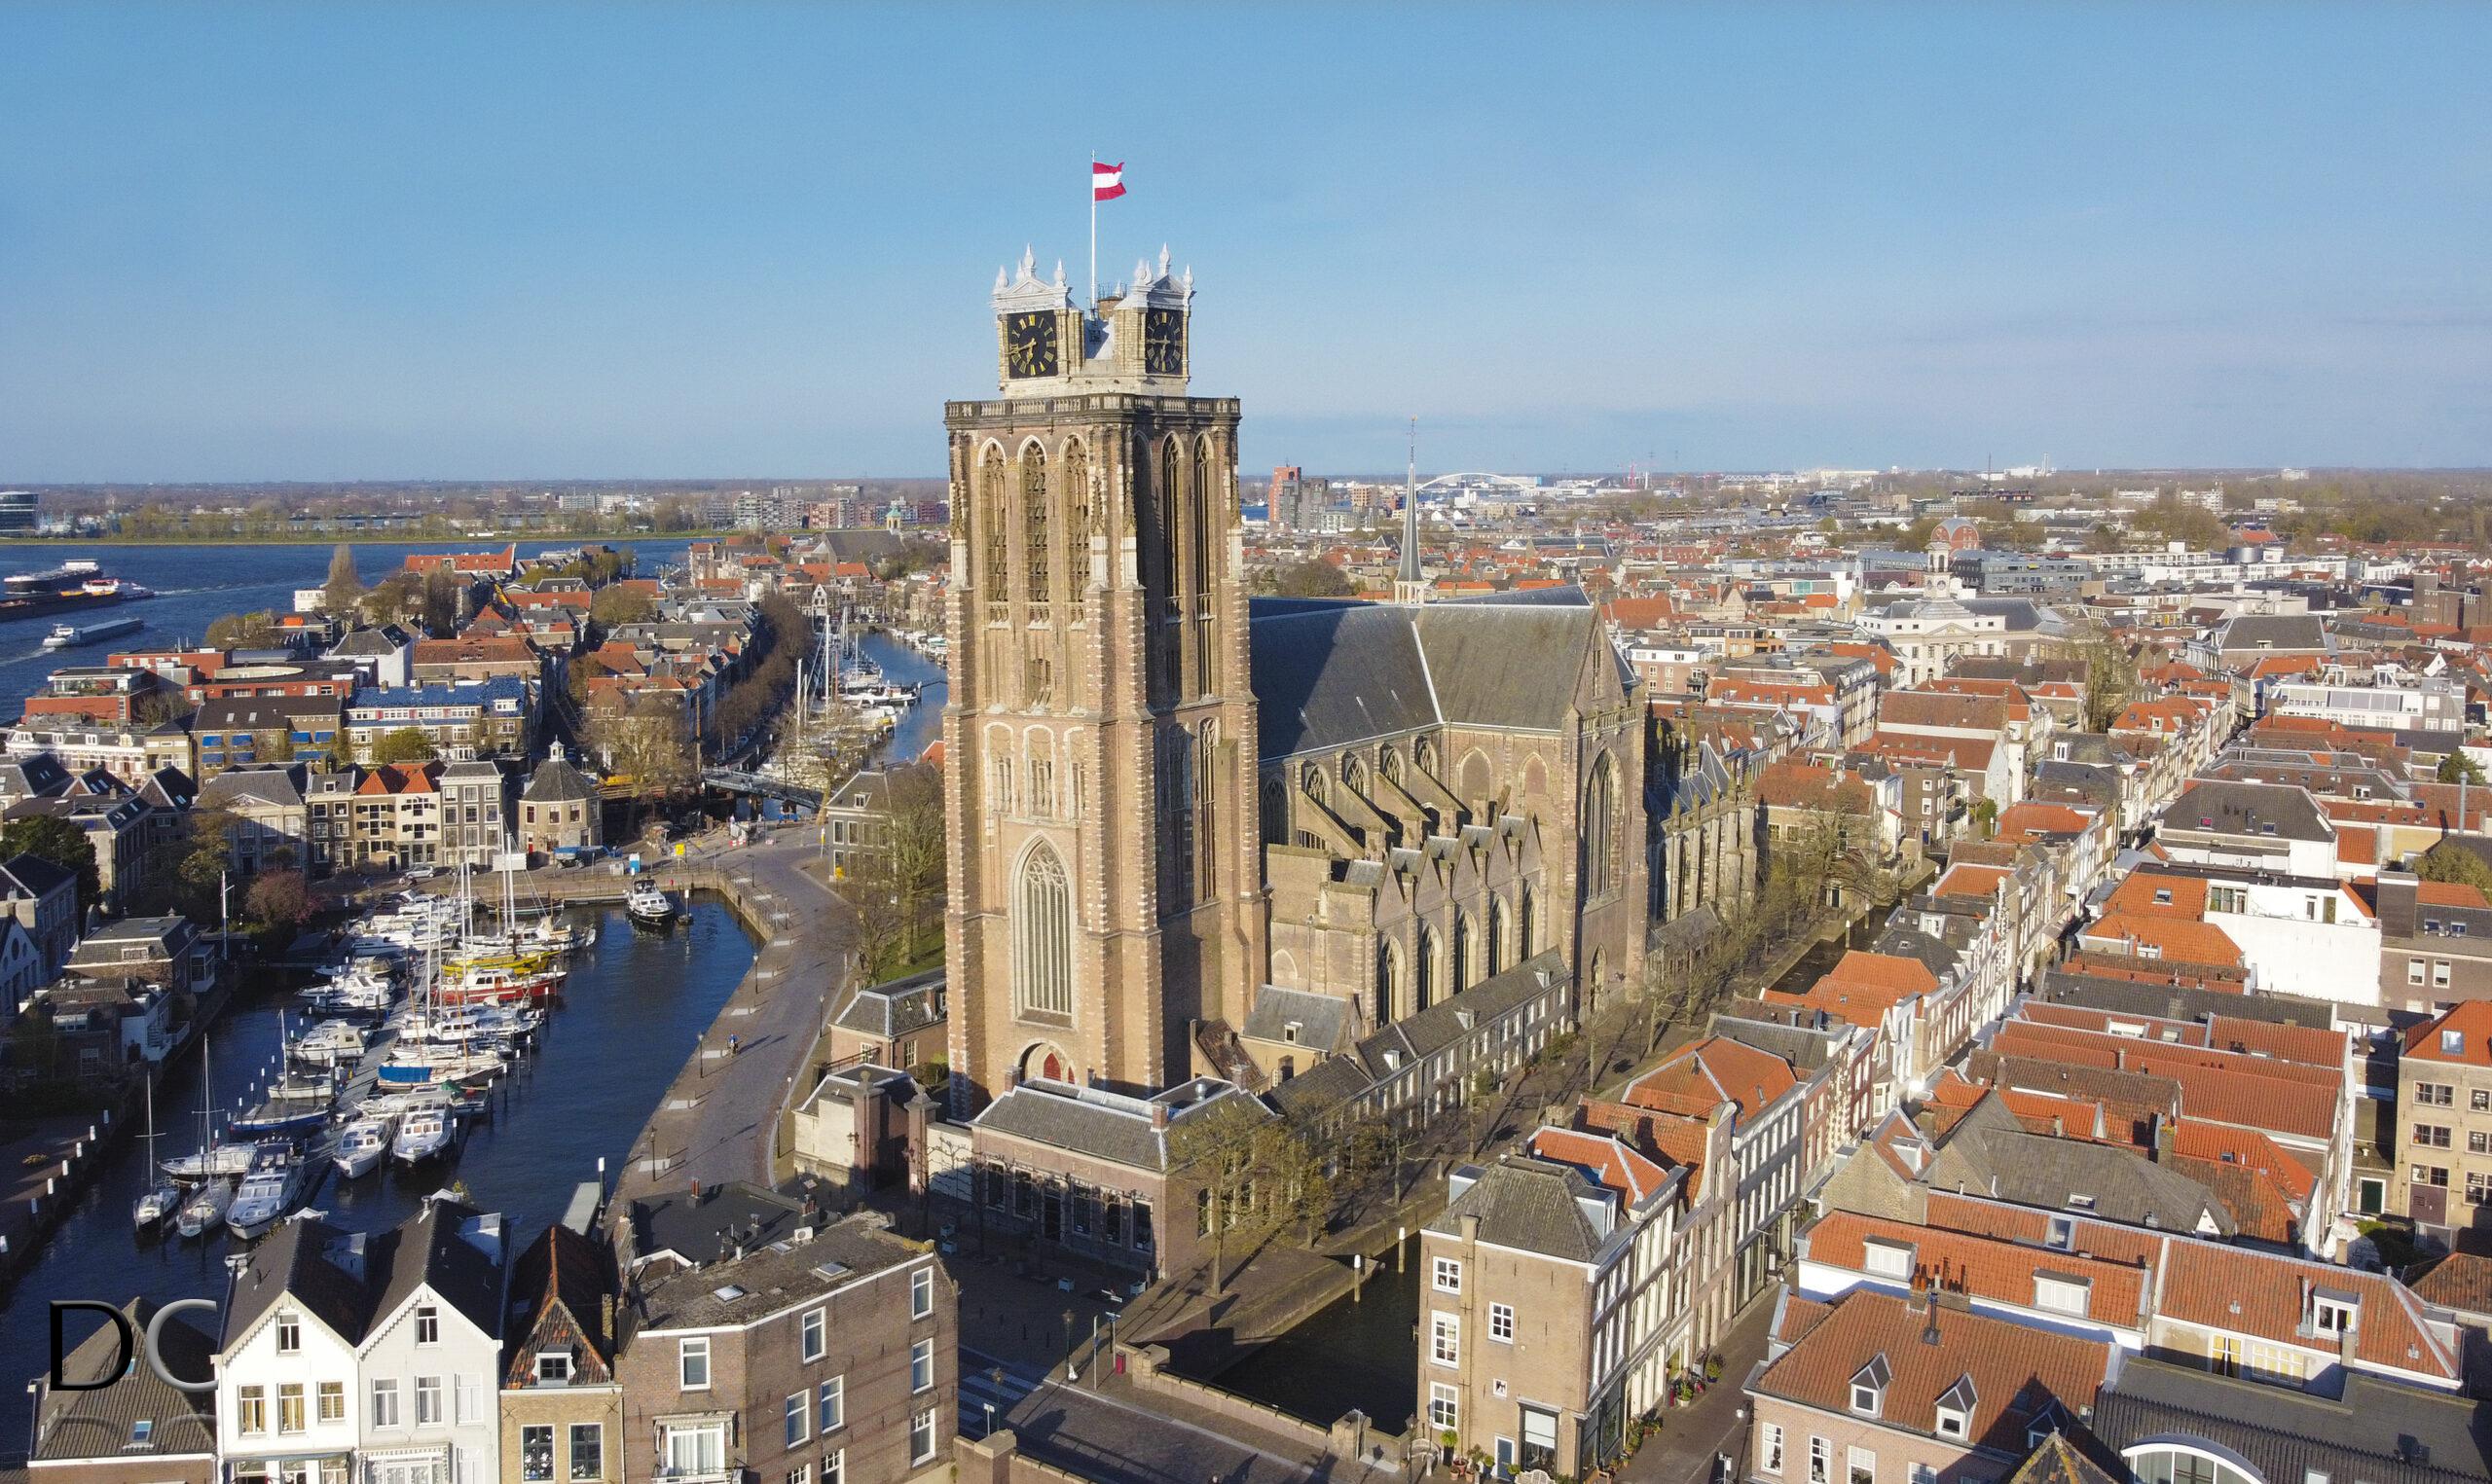 De grote kerk van Dordrecht